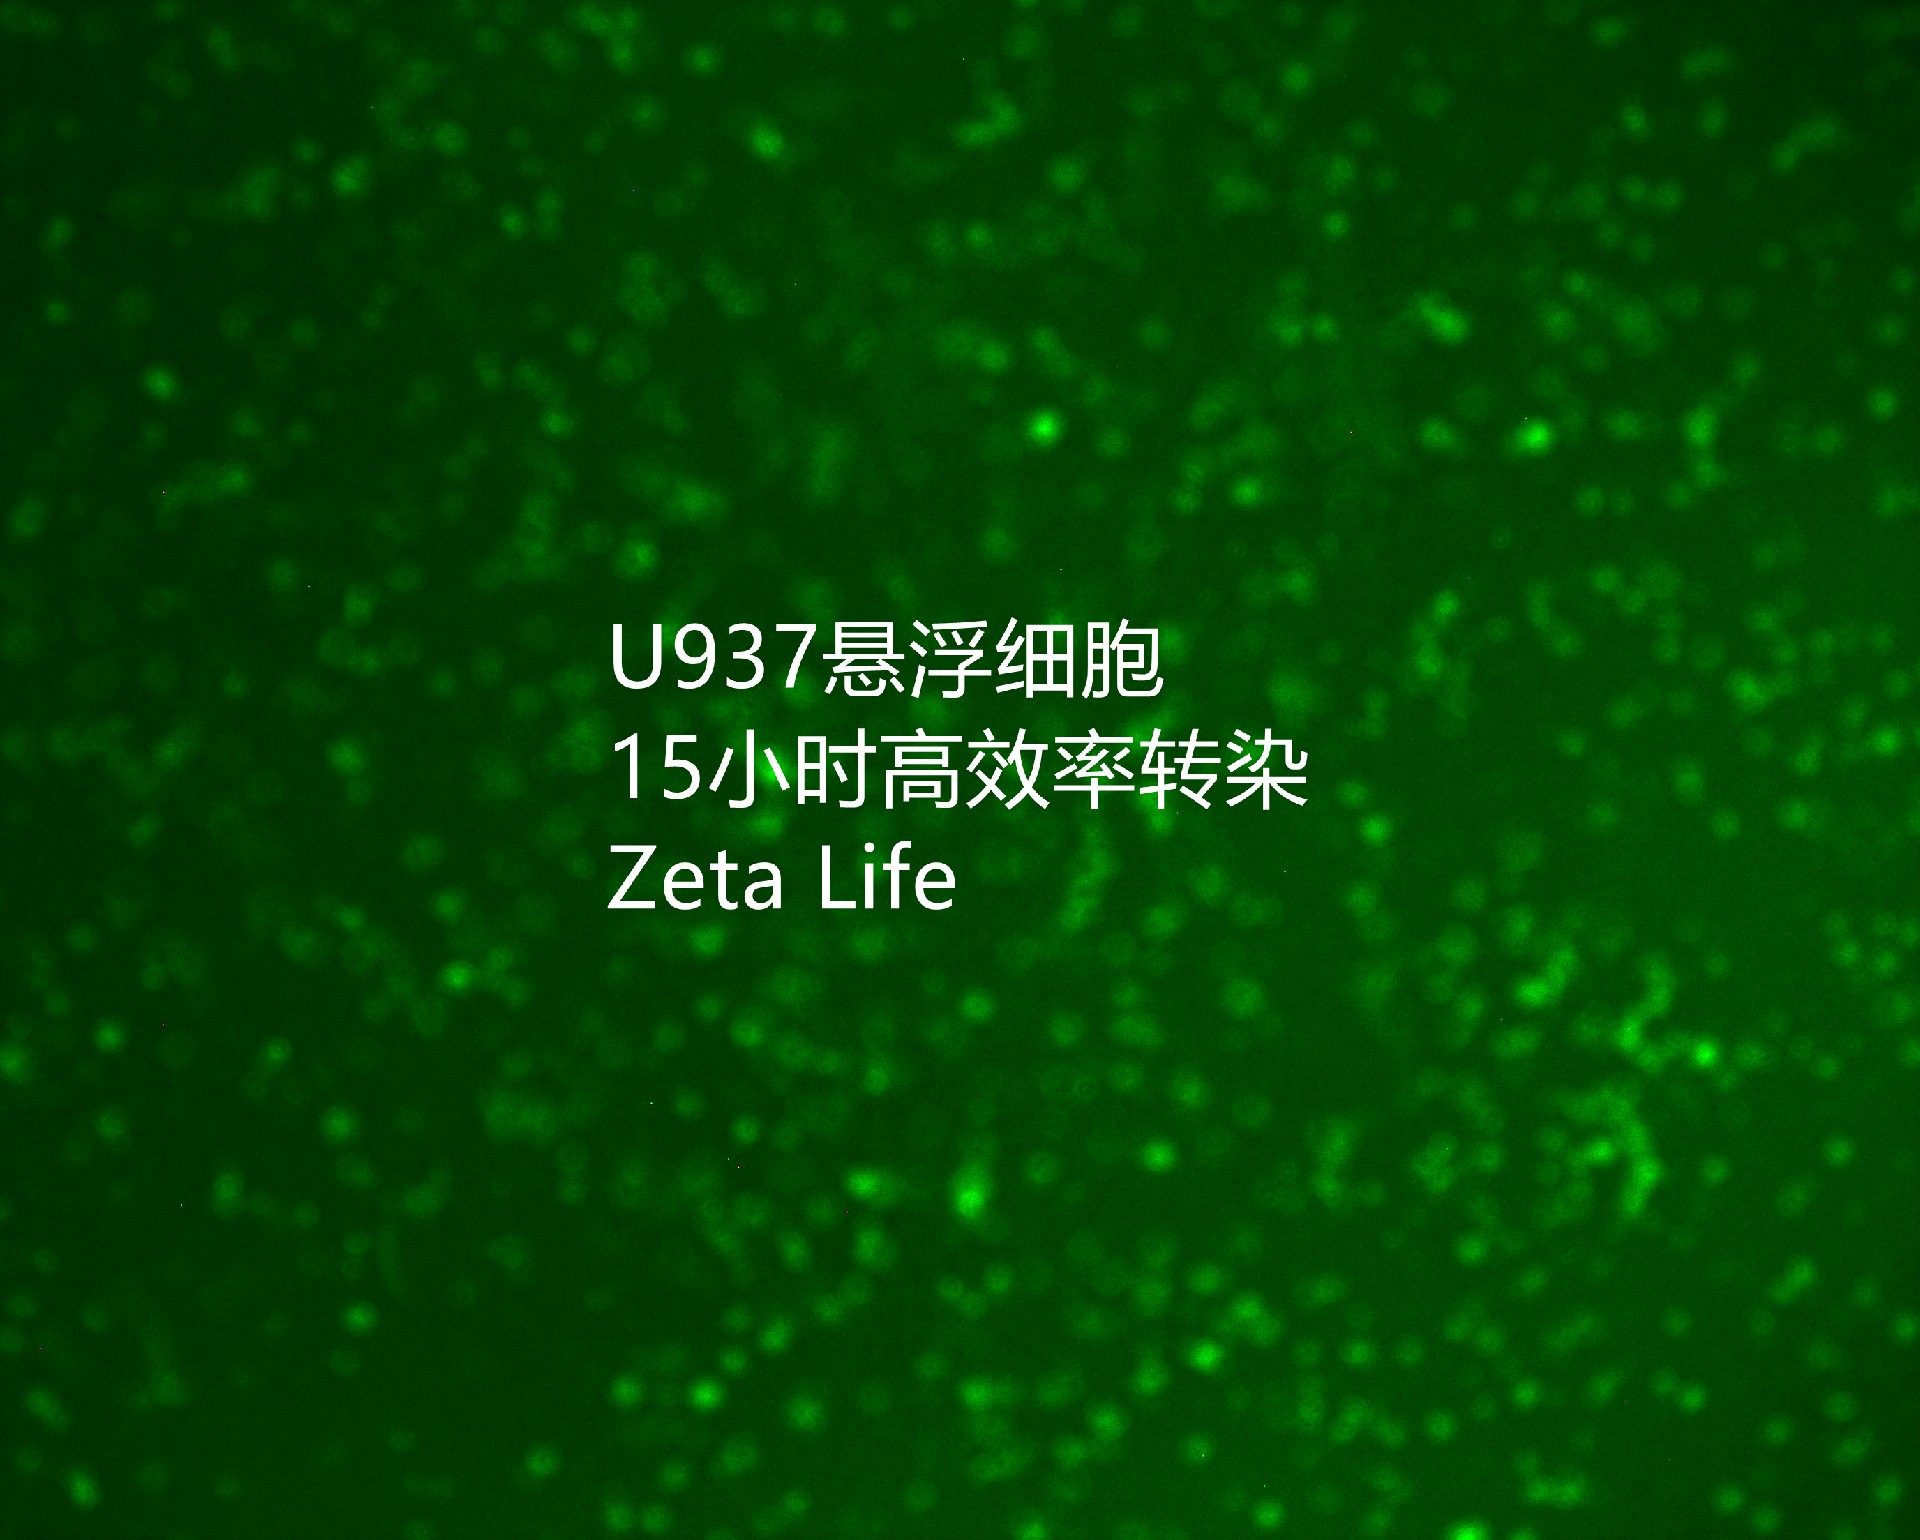 河北医科大学转染micro RNA-u937-荧光.jpg